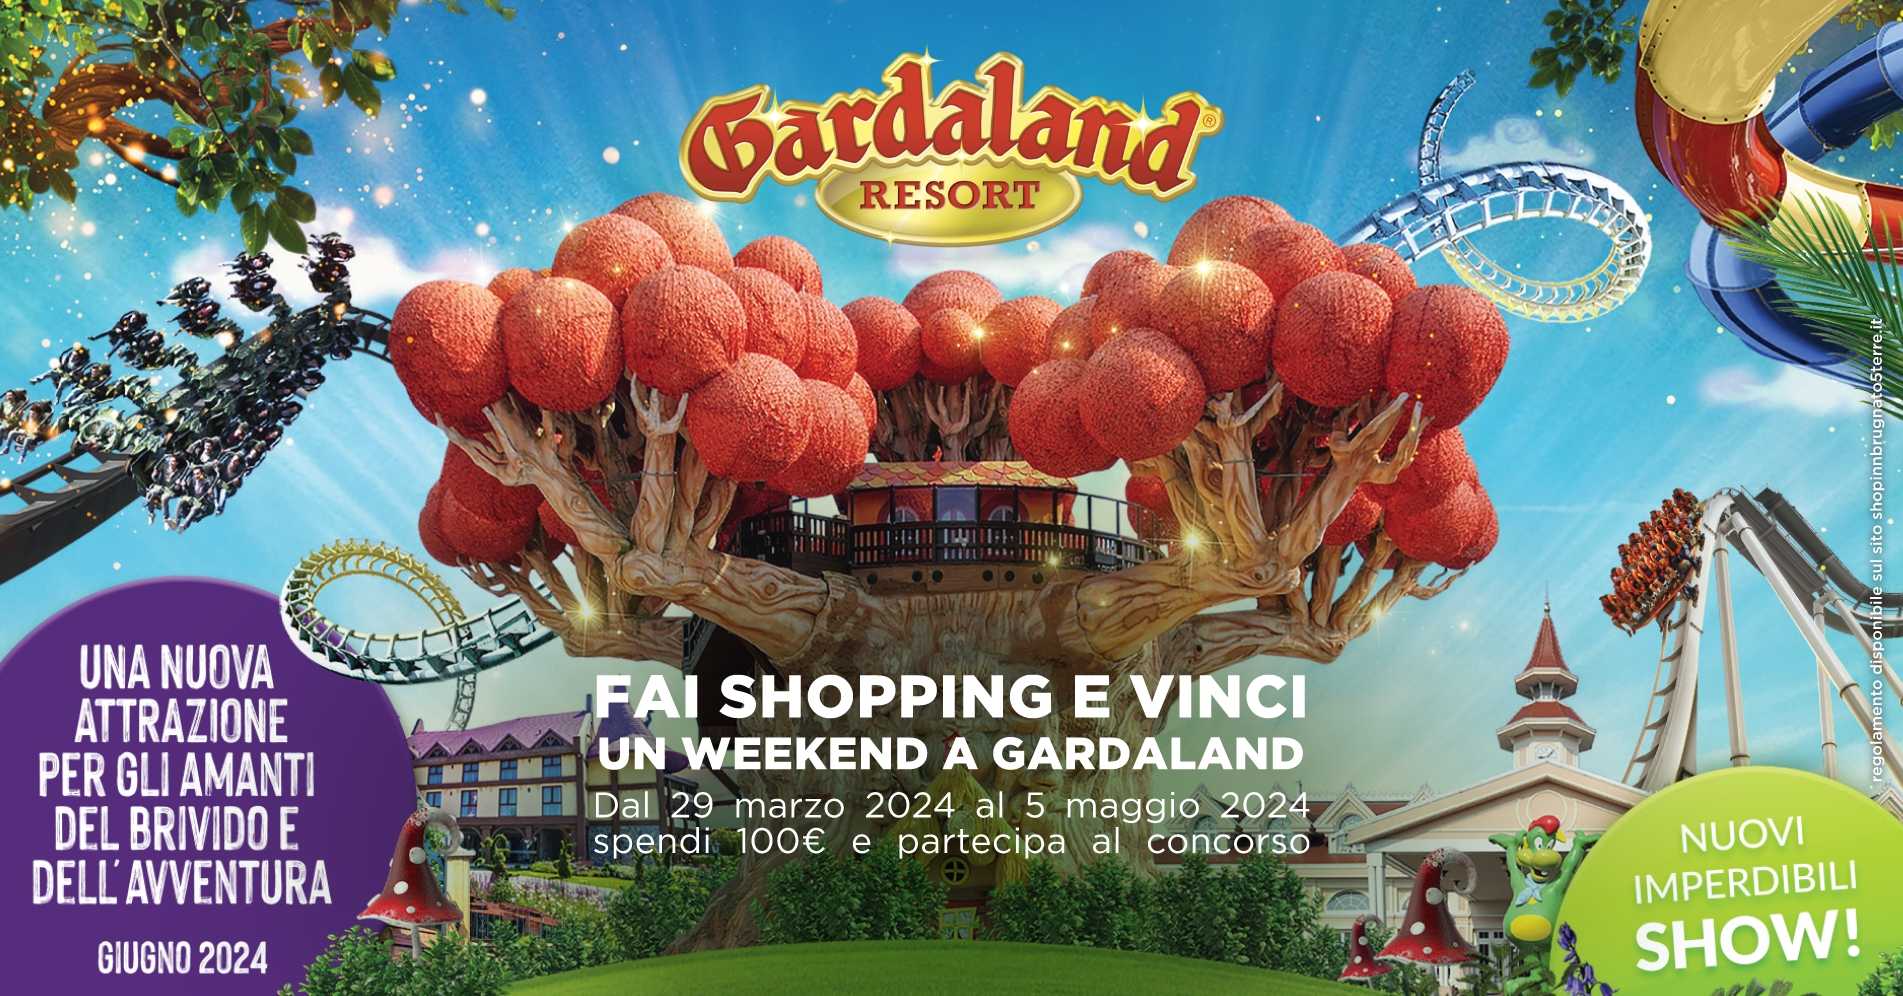 CONCORSO Fai shopping e vinci  Gardaland